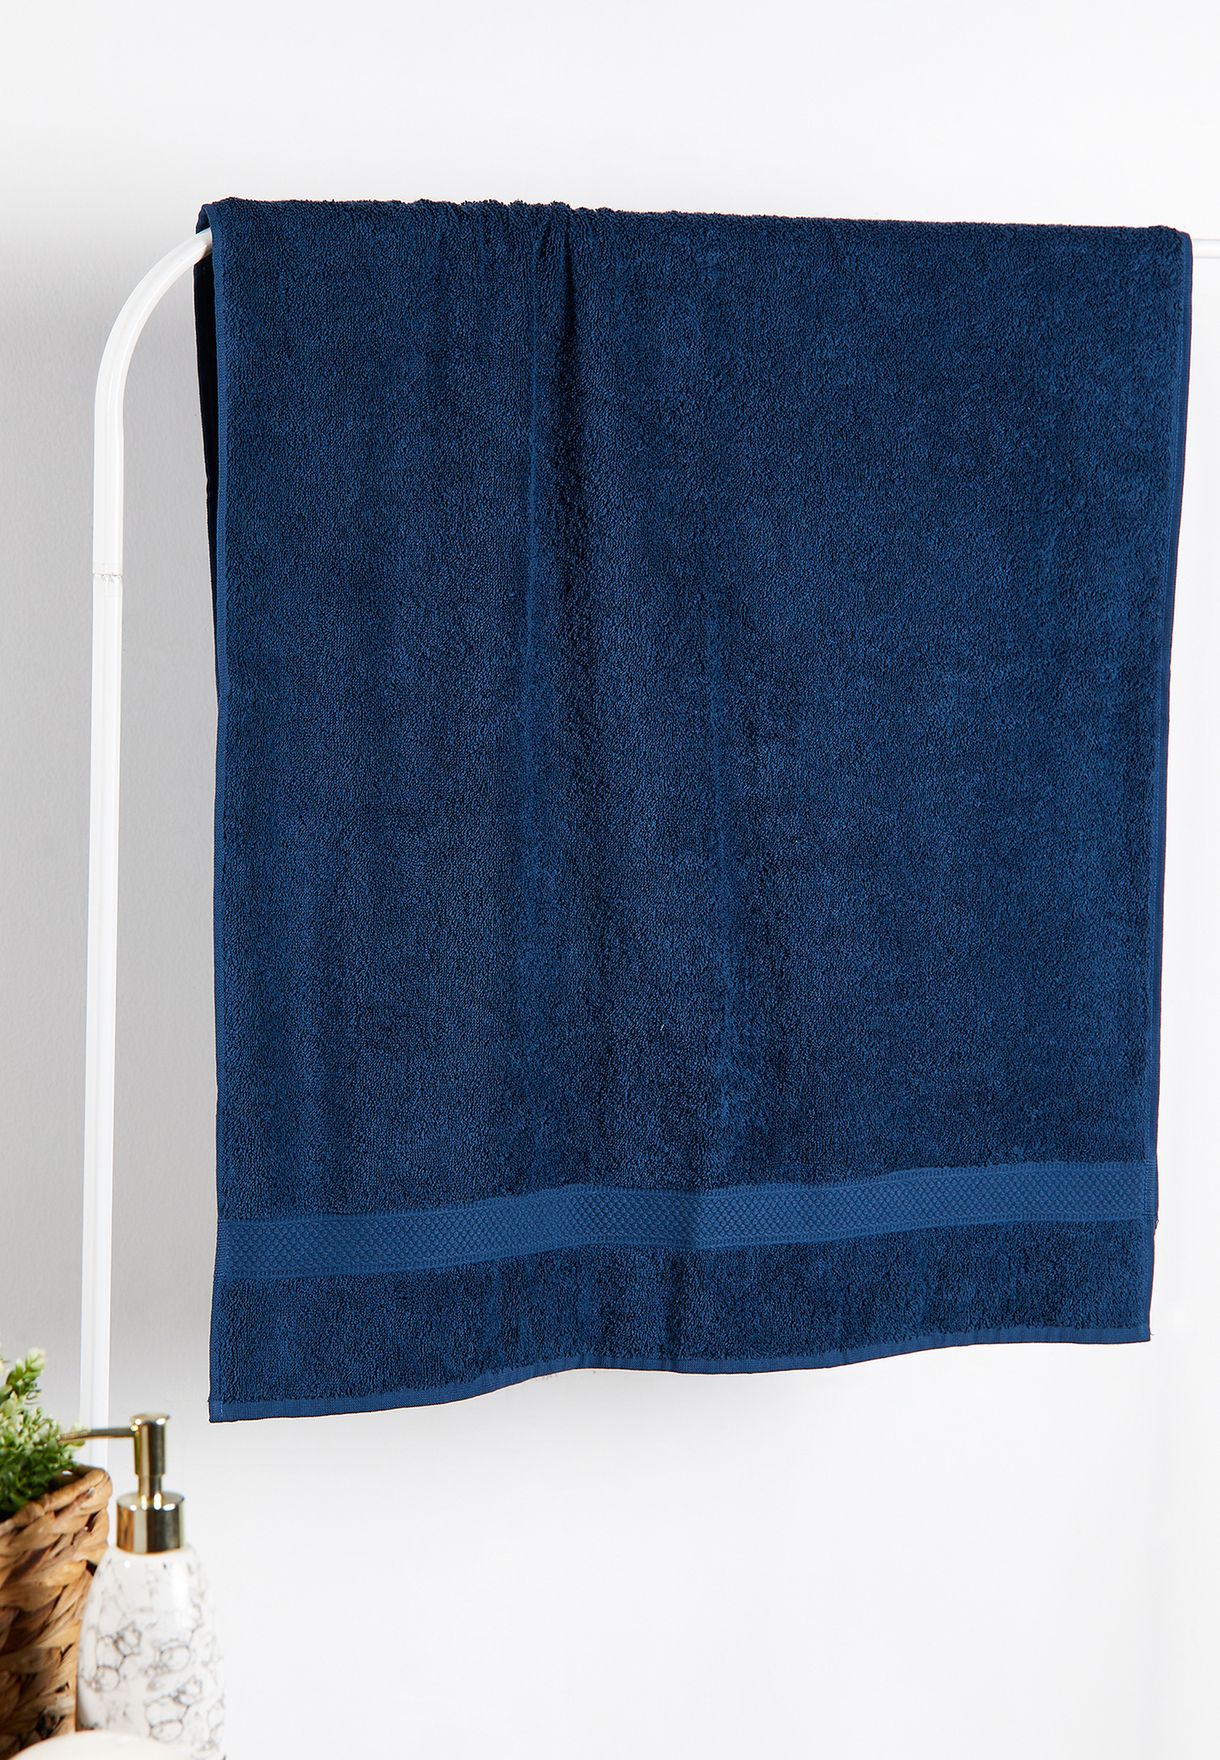 Jeans Blue Bath Towel 70X140